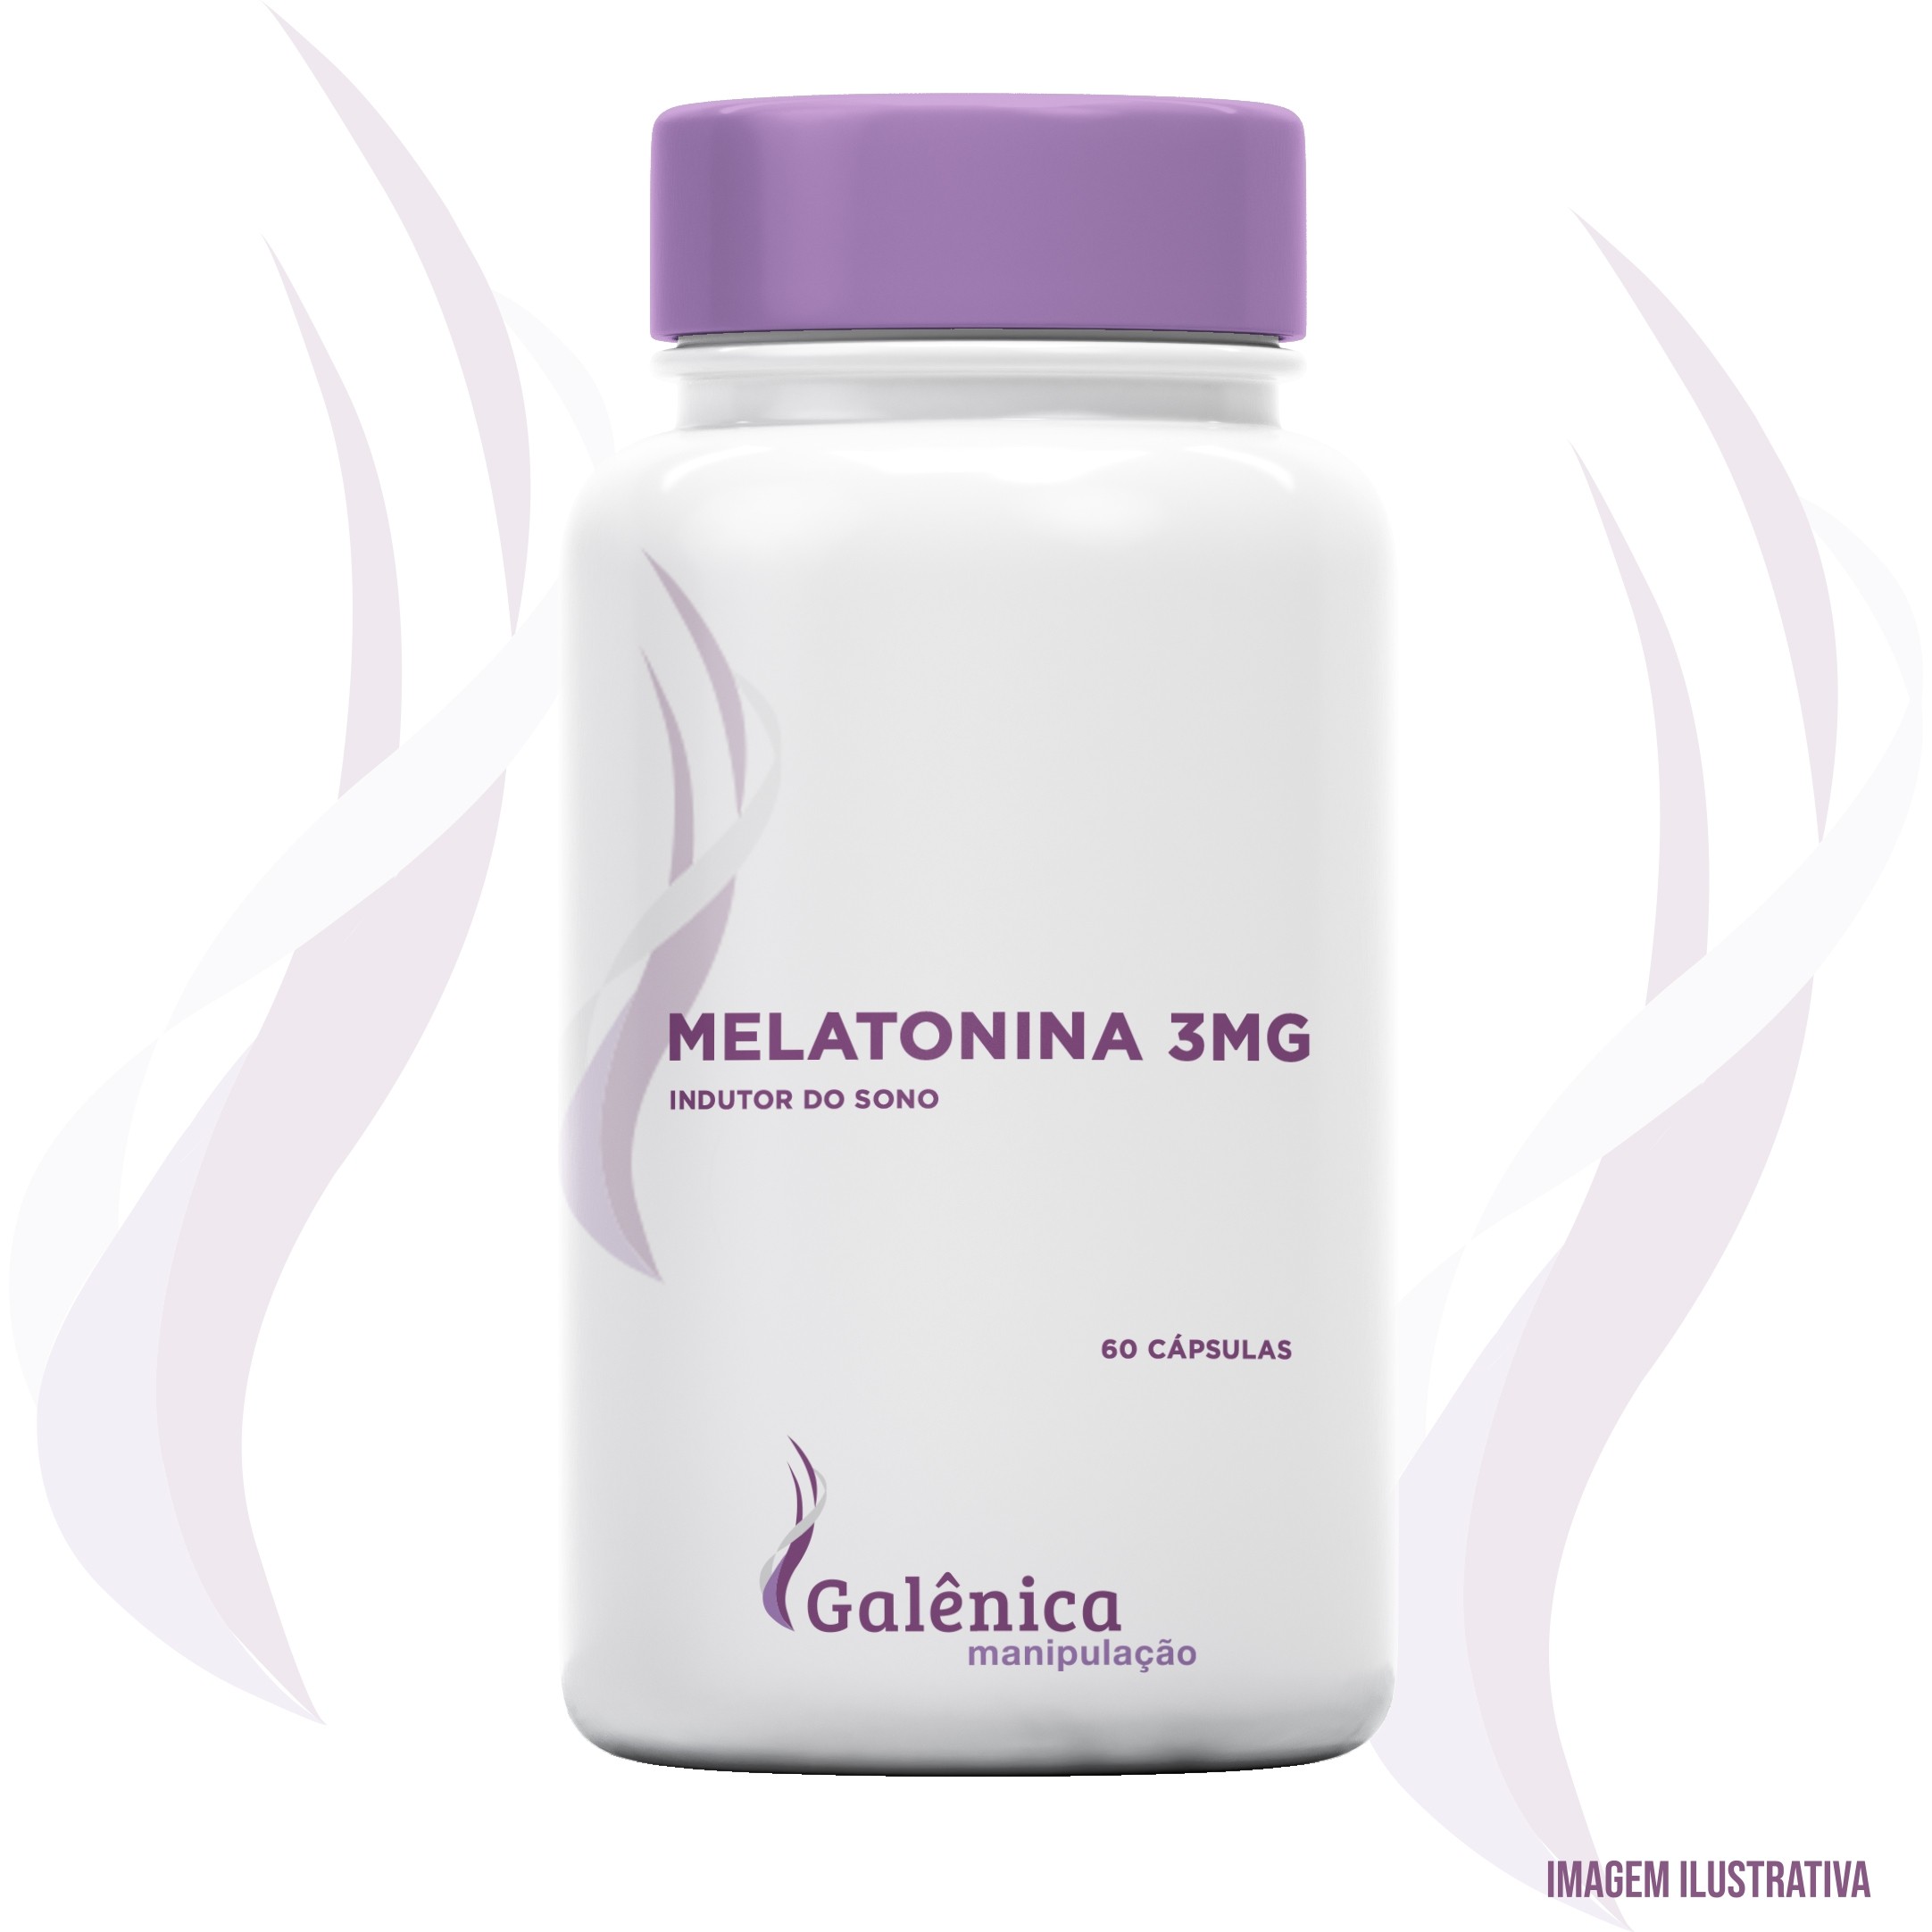 Melatonina - Indutor do sono - 3mg - 60 cápsulas